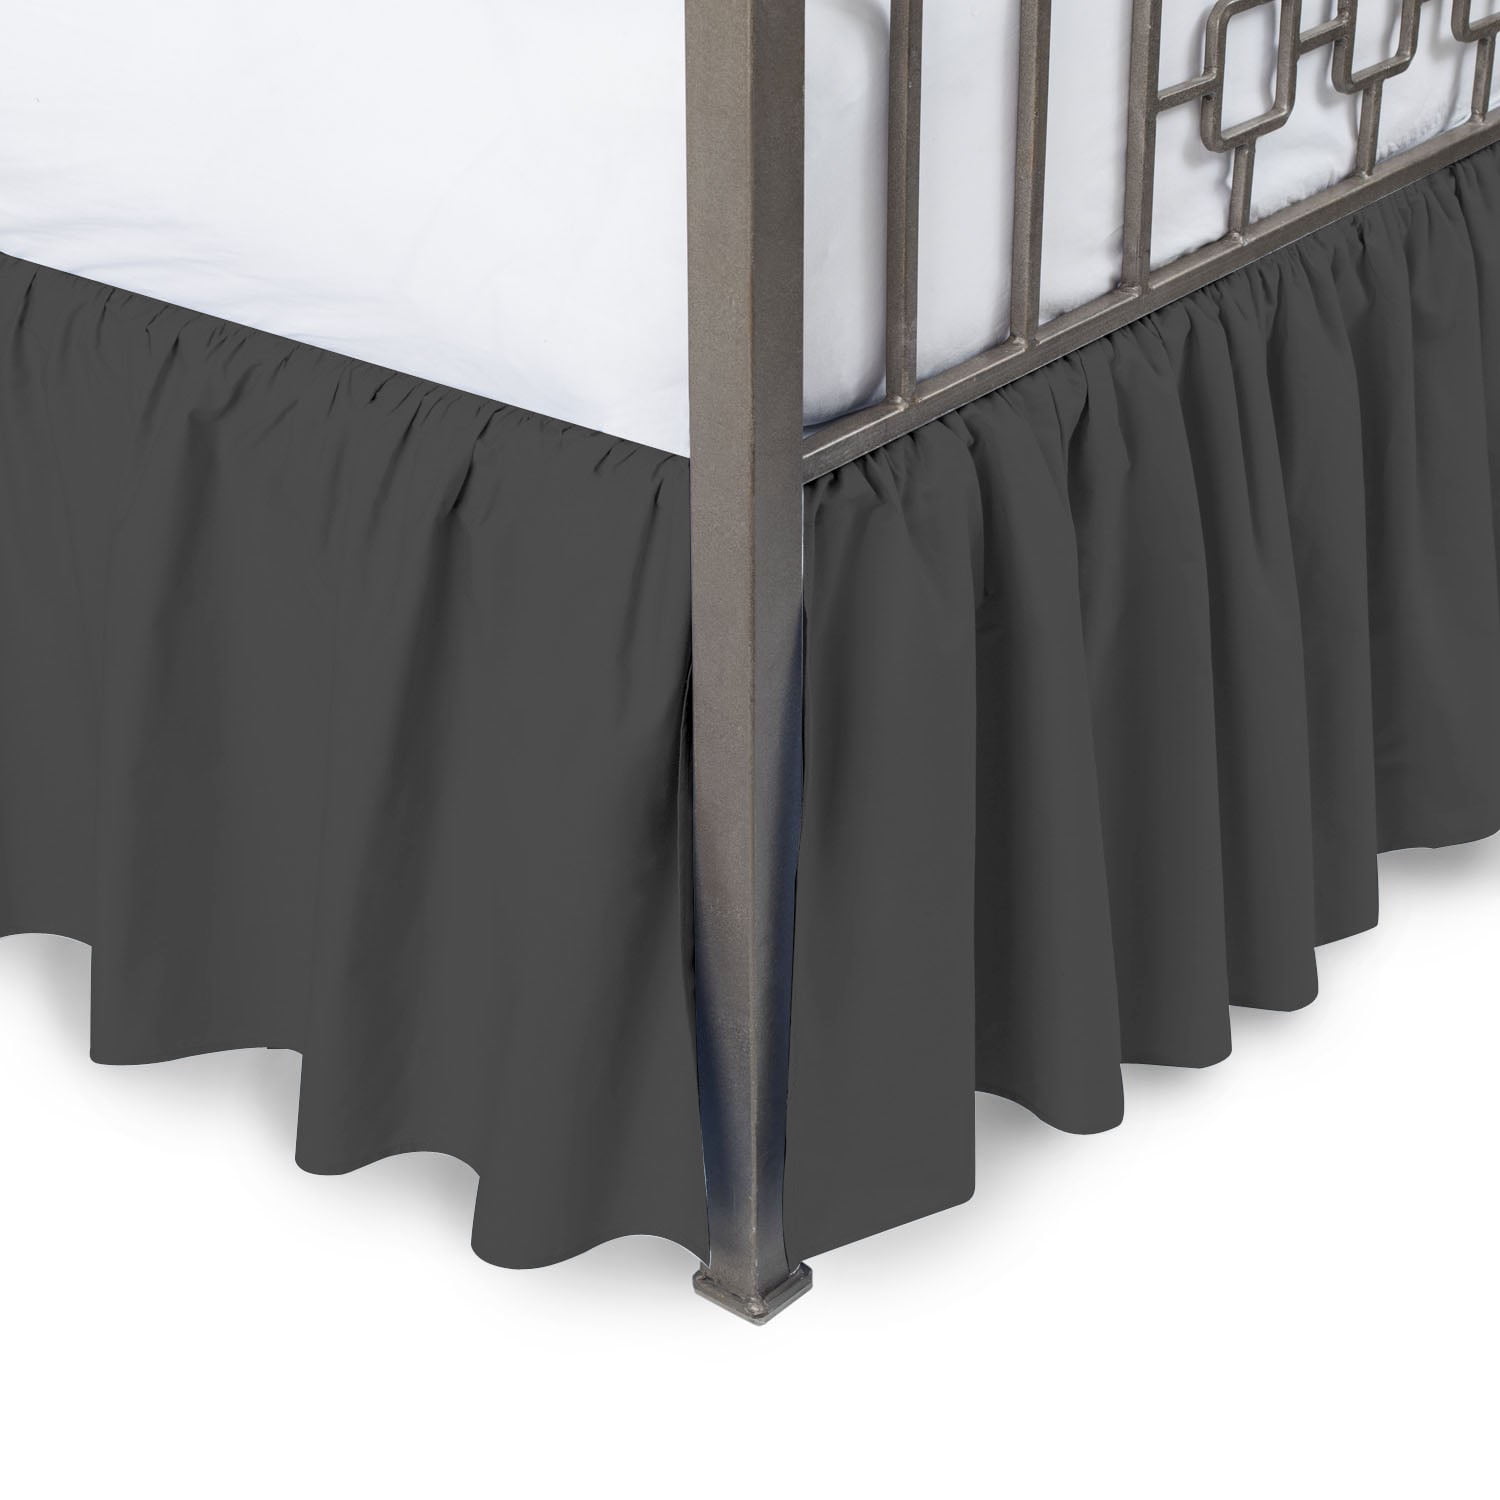 100% Linen RUFFLED BED SKIRT Twin Full Queen King Long Drop Length All sizes 